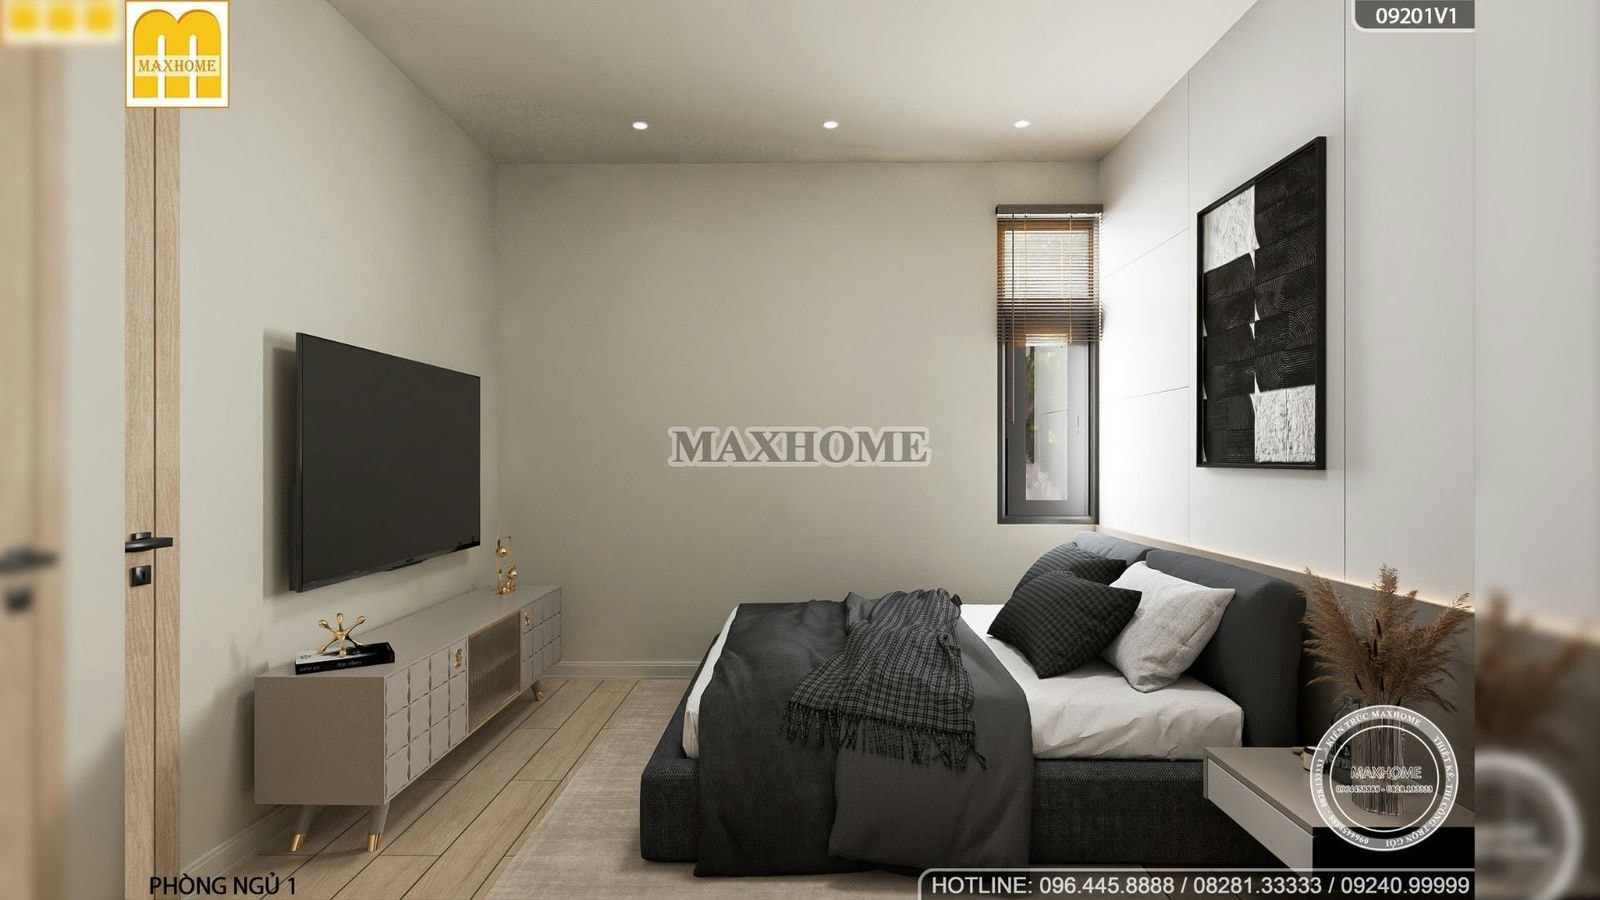 Chiêm ngưỡng bộ nội thất hiện đại đậm phong cách Maxhome | MH01638